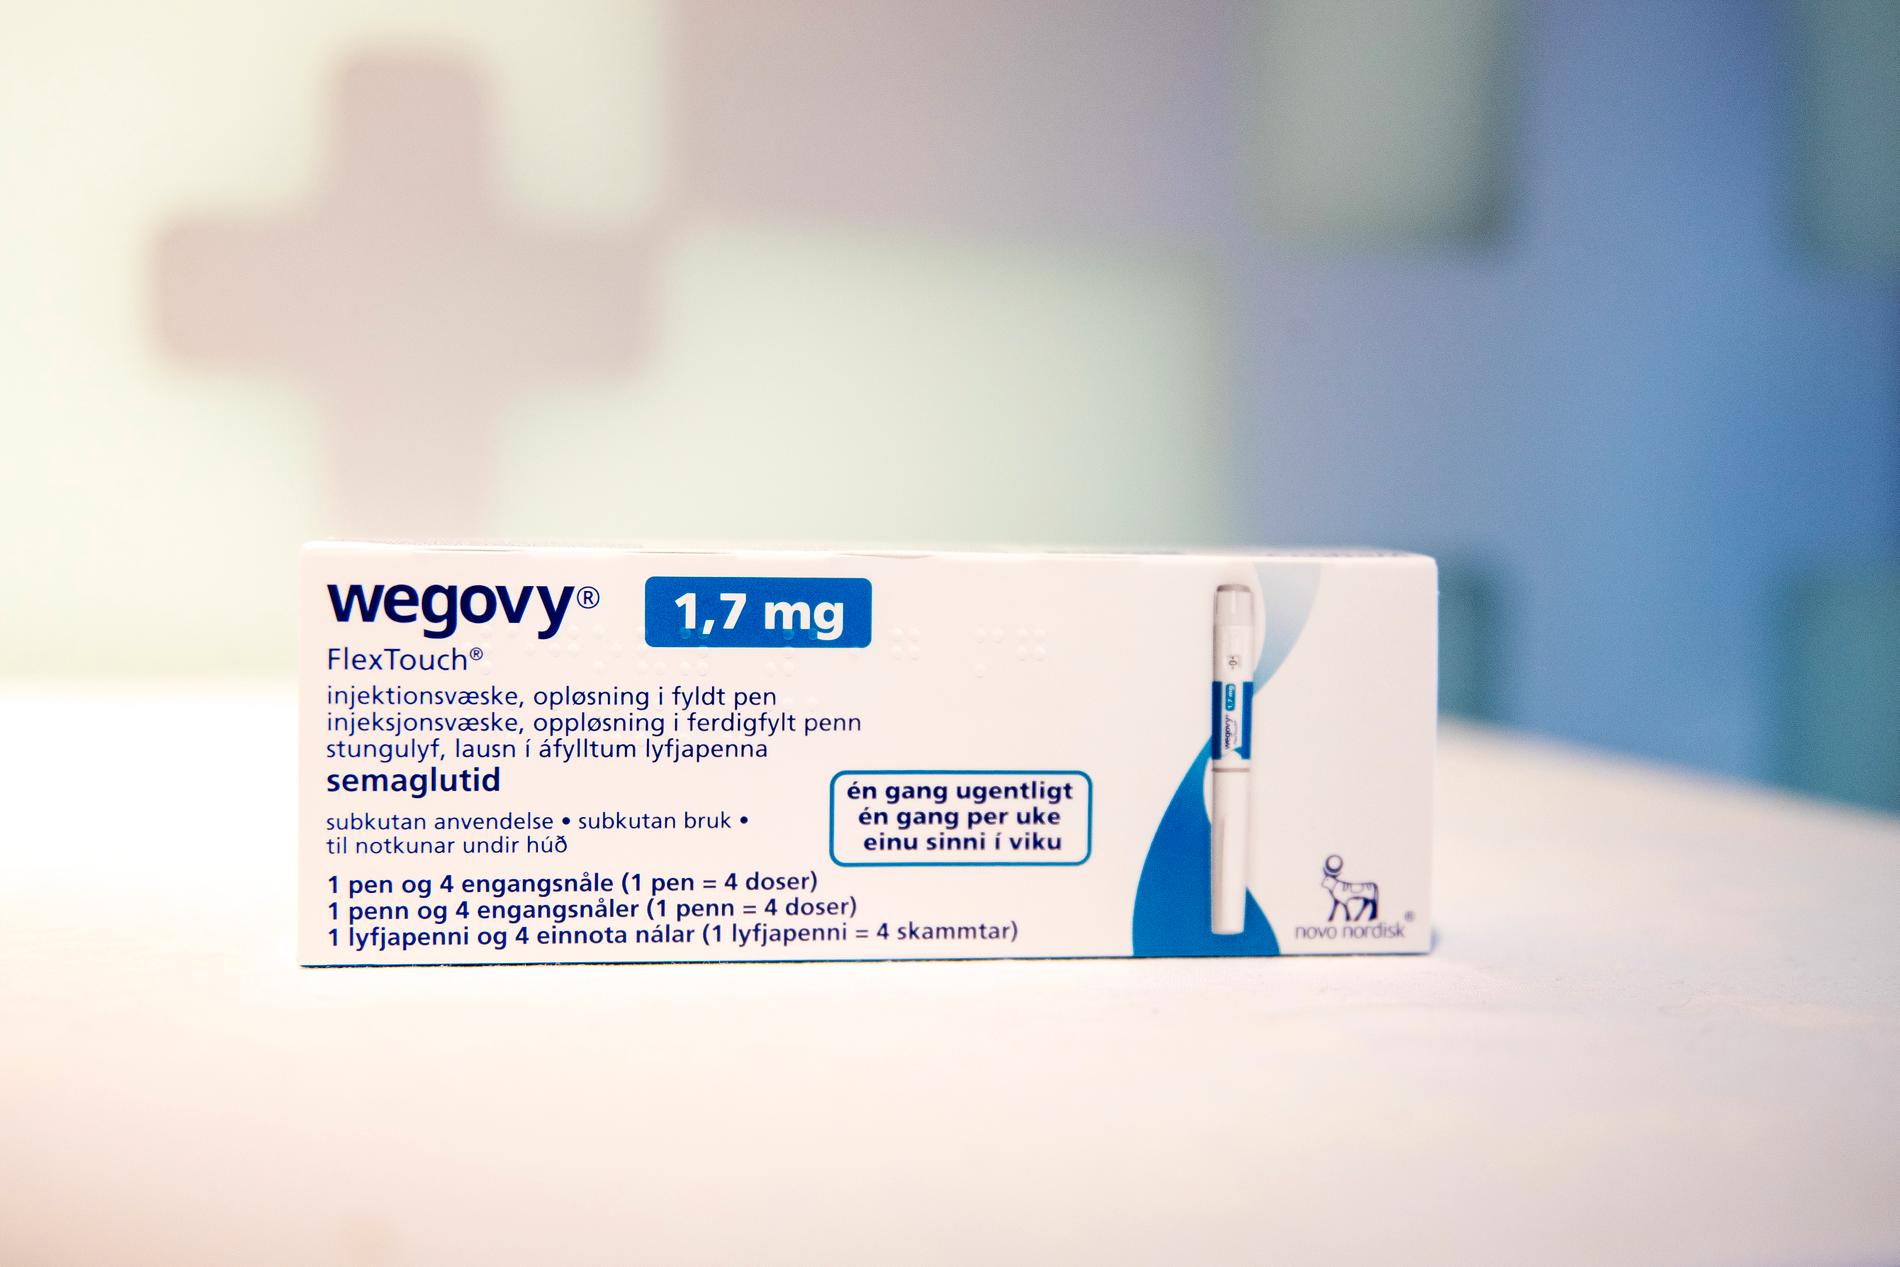 Wegovy er et legemiddel mot diabetes som også benyttes for vektreduksjon. 